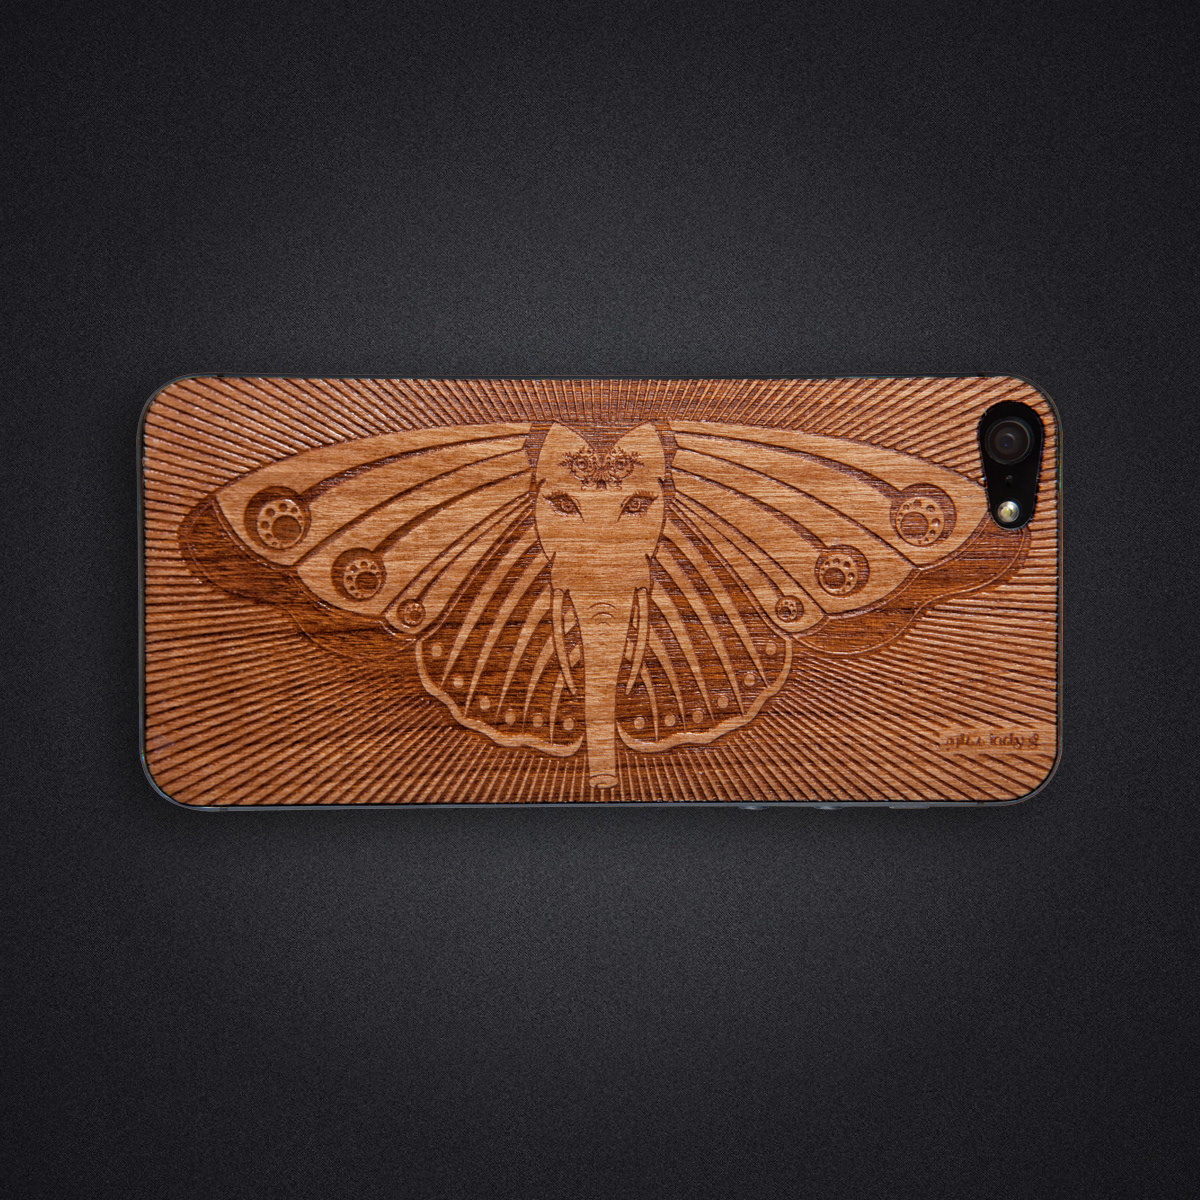 Laser Engraved iphone 5 Ganesh butterfly elephant wood veneer wood skin